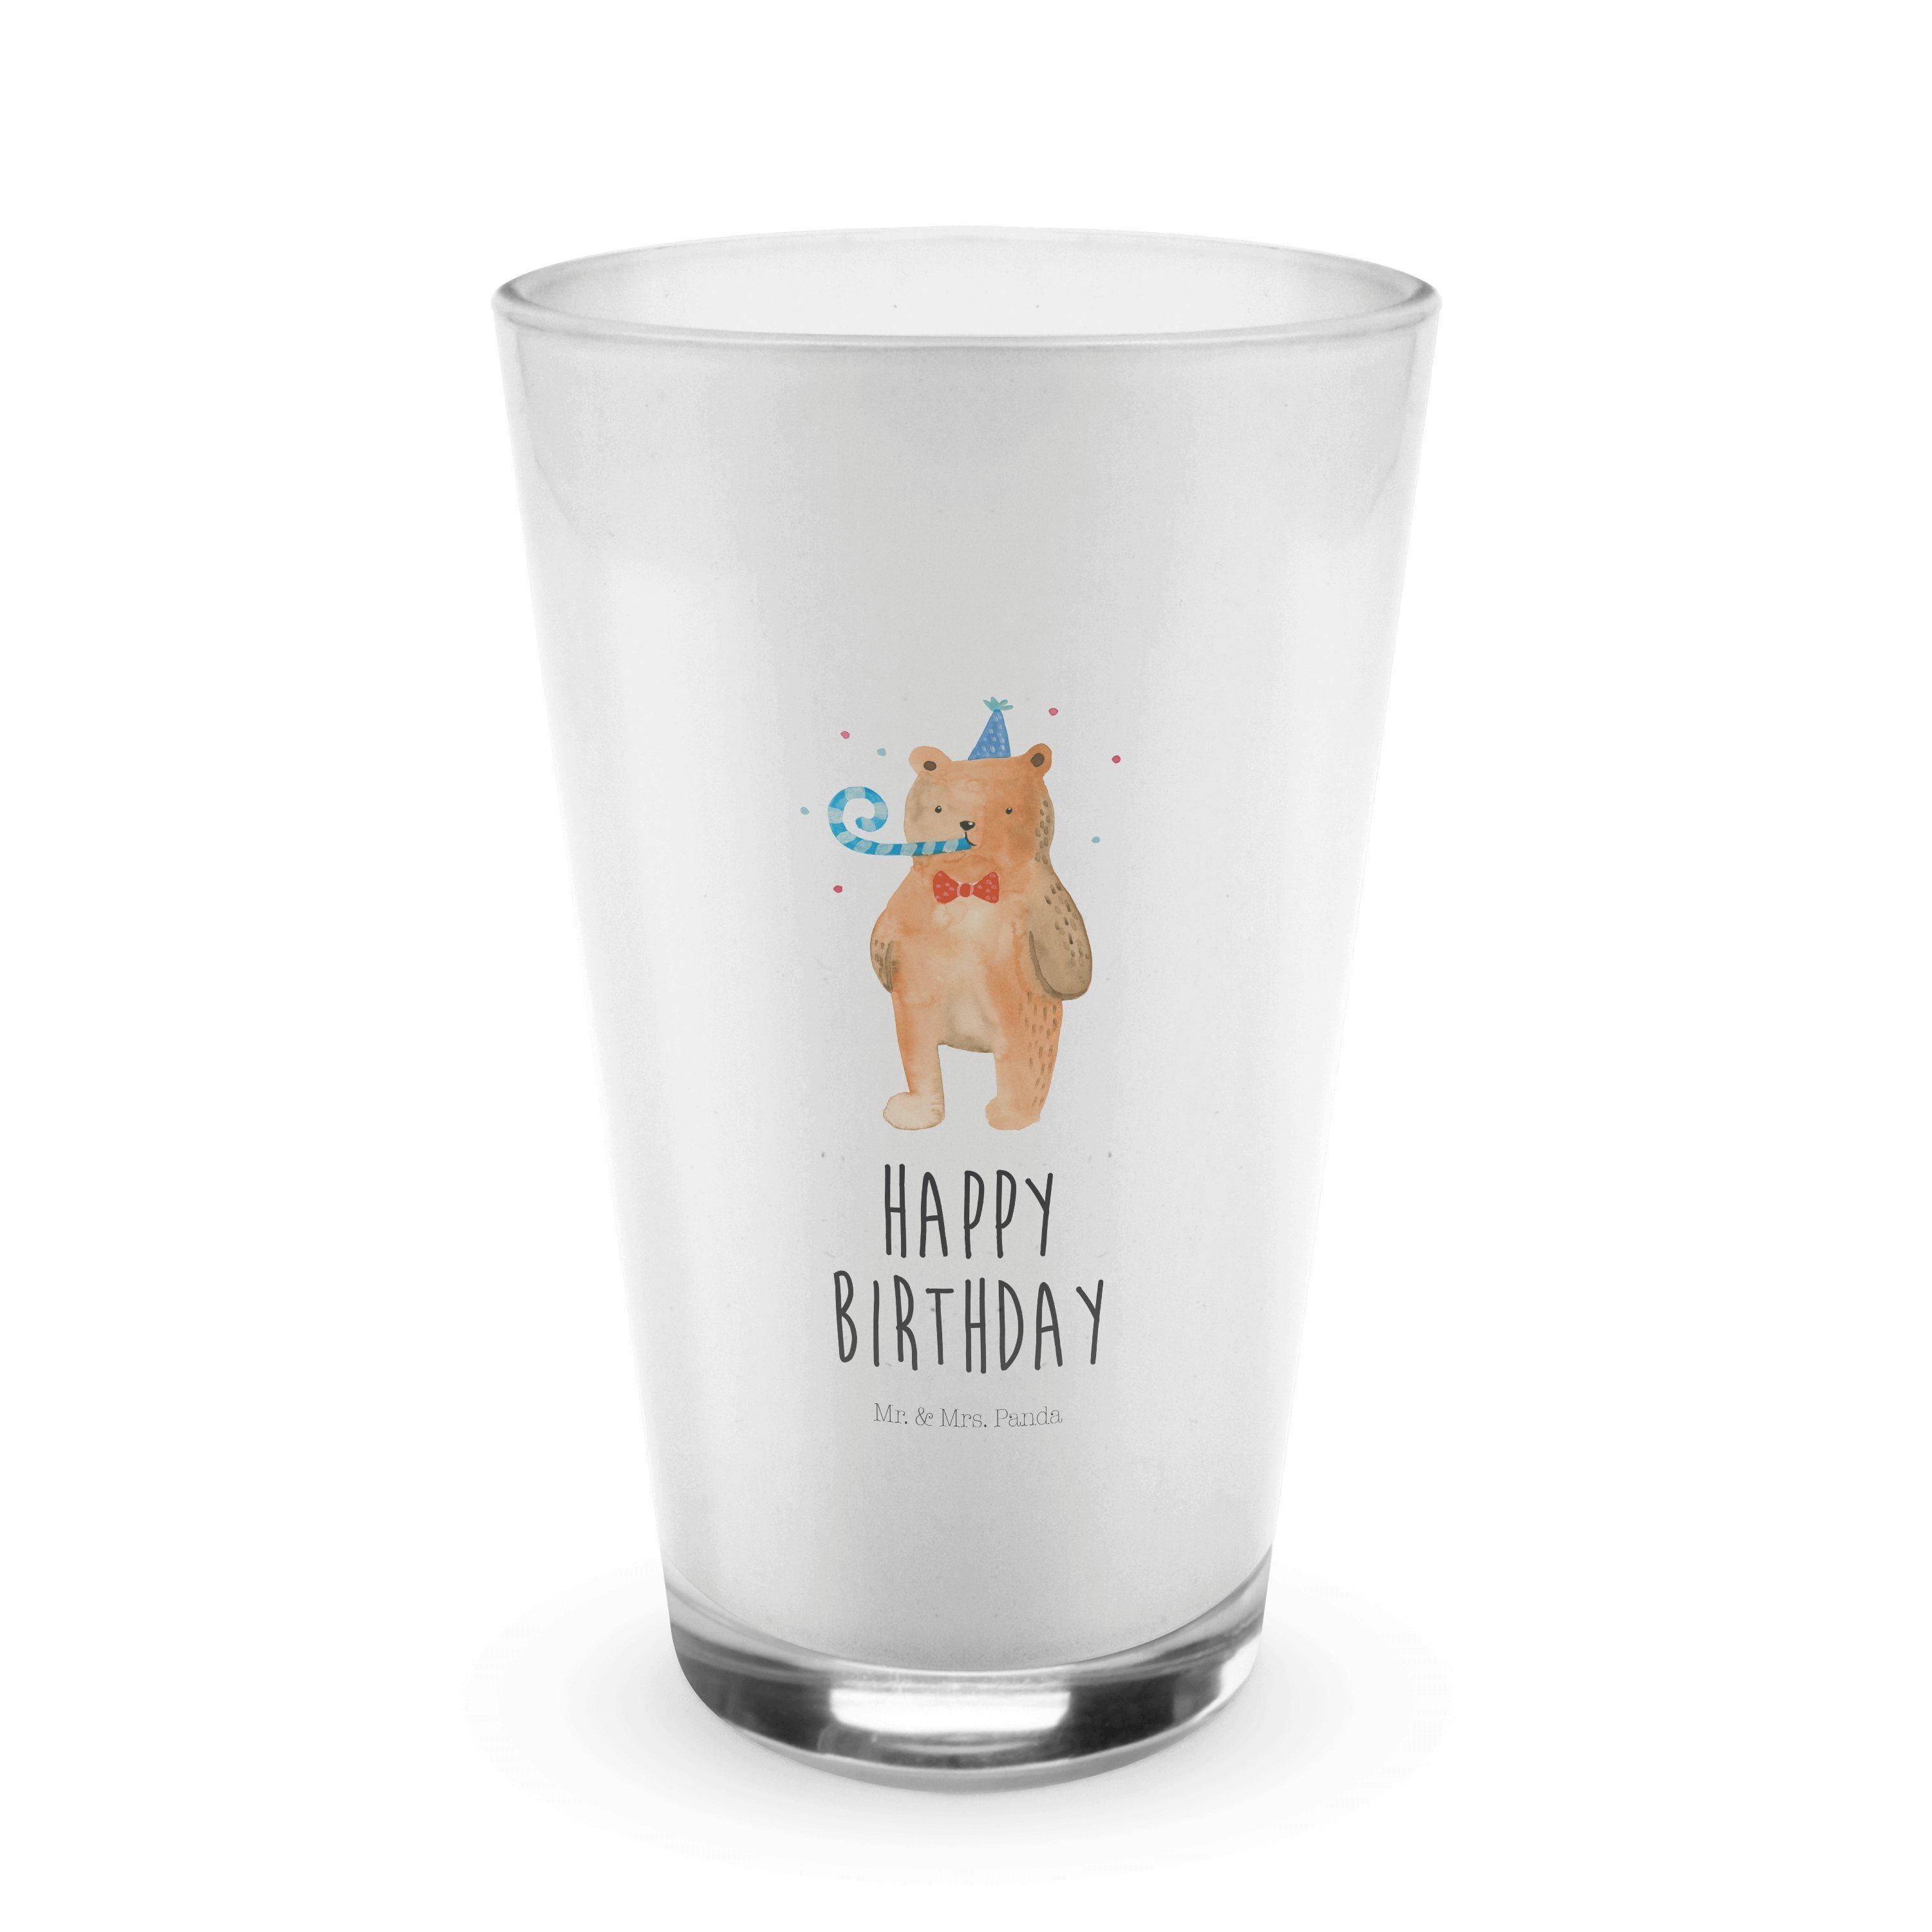 Mr. & Mrs. Panda Glas Birthday Bär - Transparent - Geschenk, Geburtstag, Alles Gute, Glückw, Premium Glas